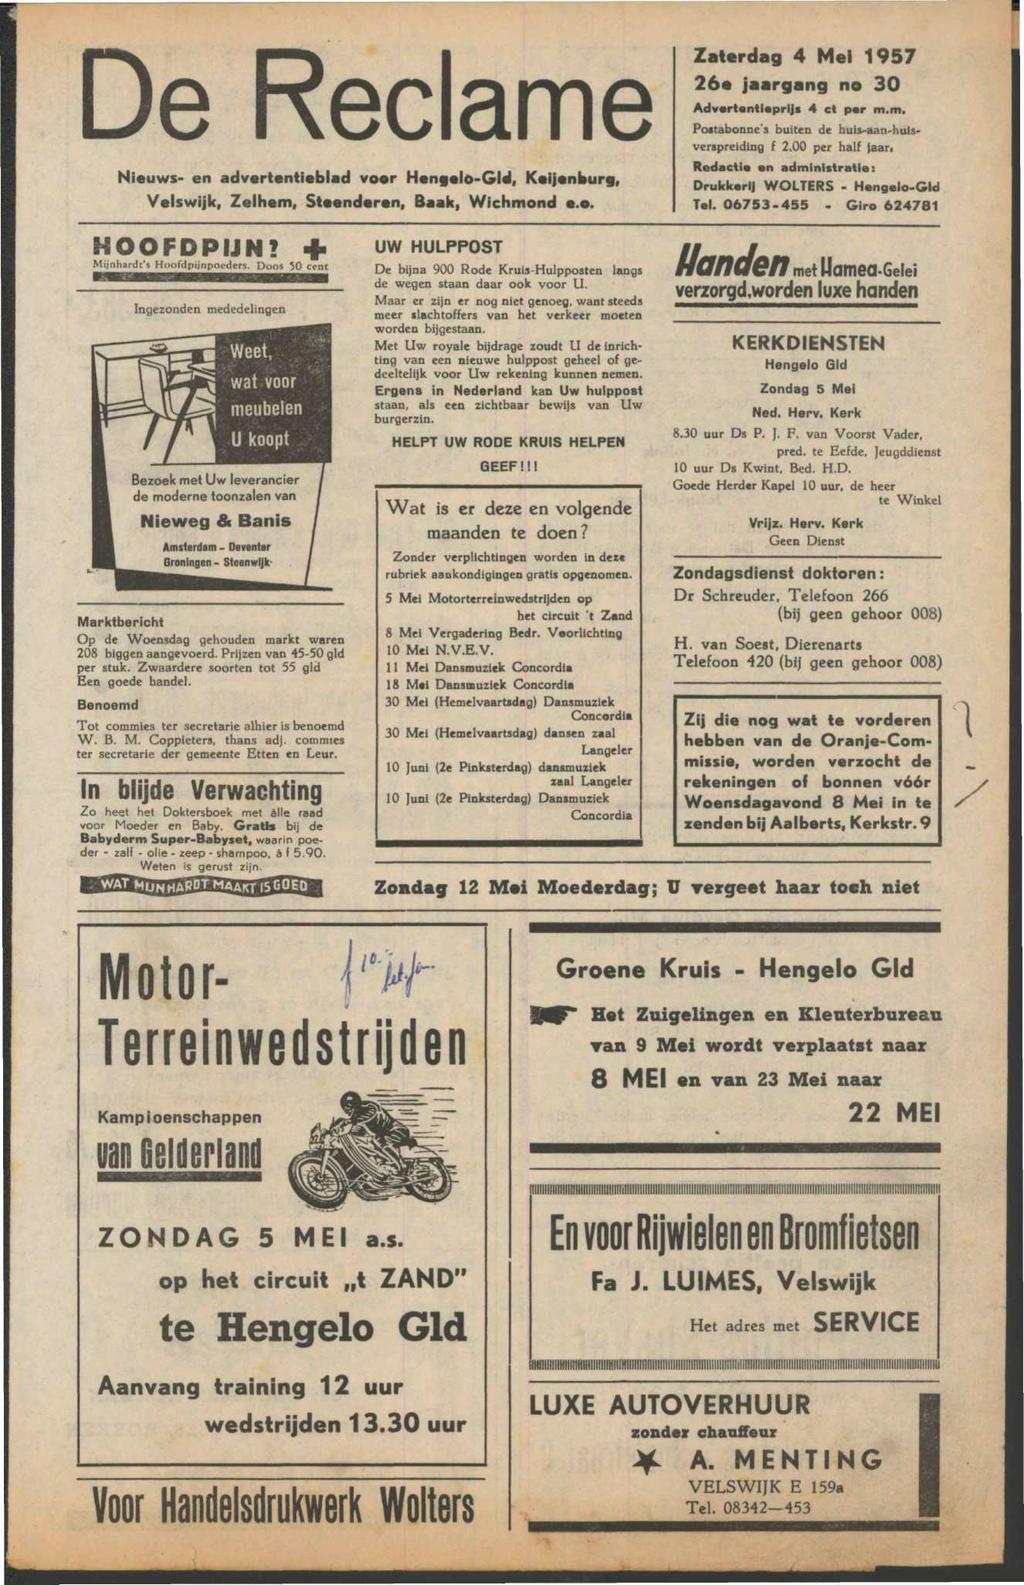 De Reclame Nieuws- en advertentieblad voer Hen elo-gld f Keijenburf, Velswijk, Zelhem, Steenderen, Baak, Wichmond e.e. Zaterdag 4 Mei 1957 26e jaargang no 30 Advertentieprijs 4 et per m.m. Pottabonne's buiten de huis-aan-hulsverspreiding f 2.